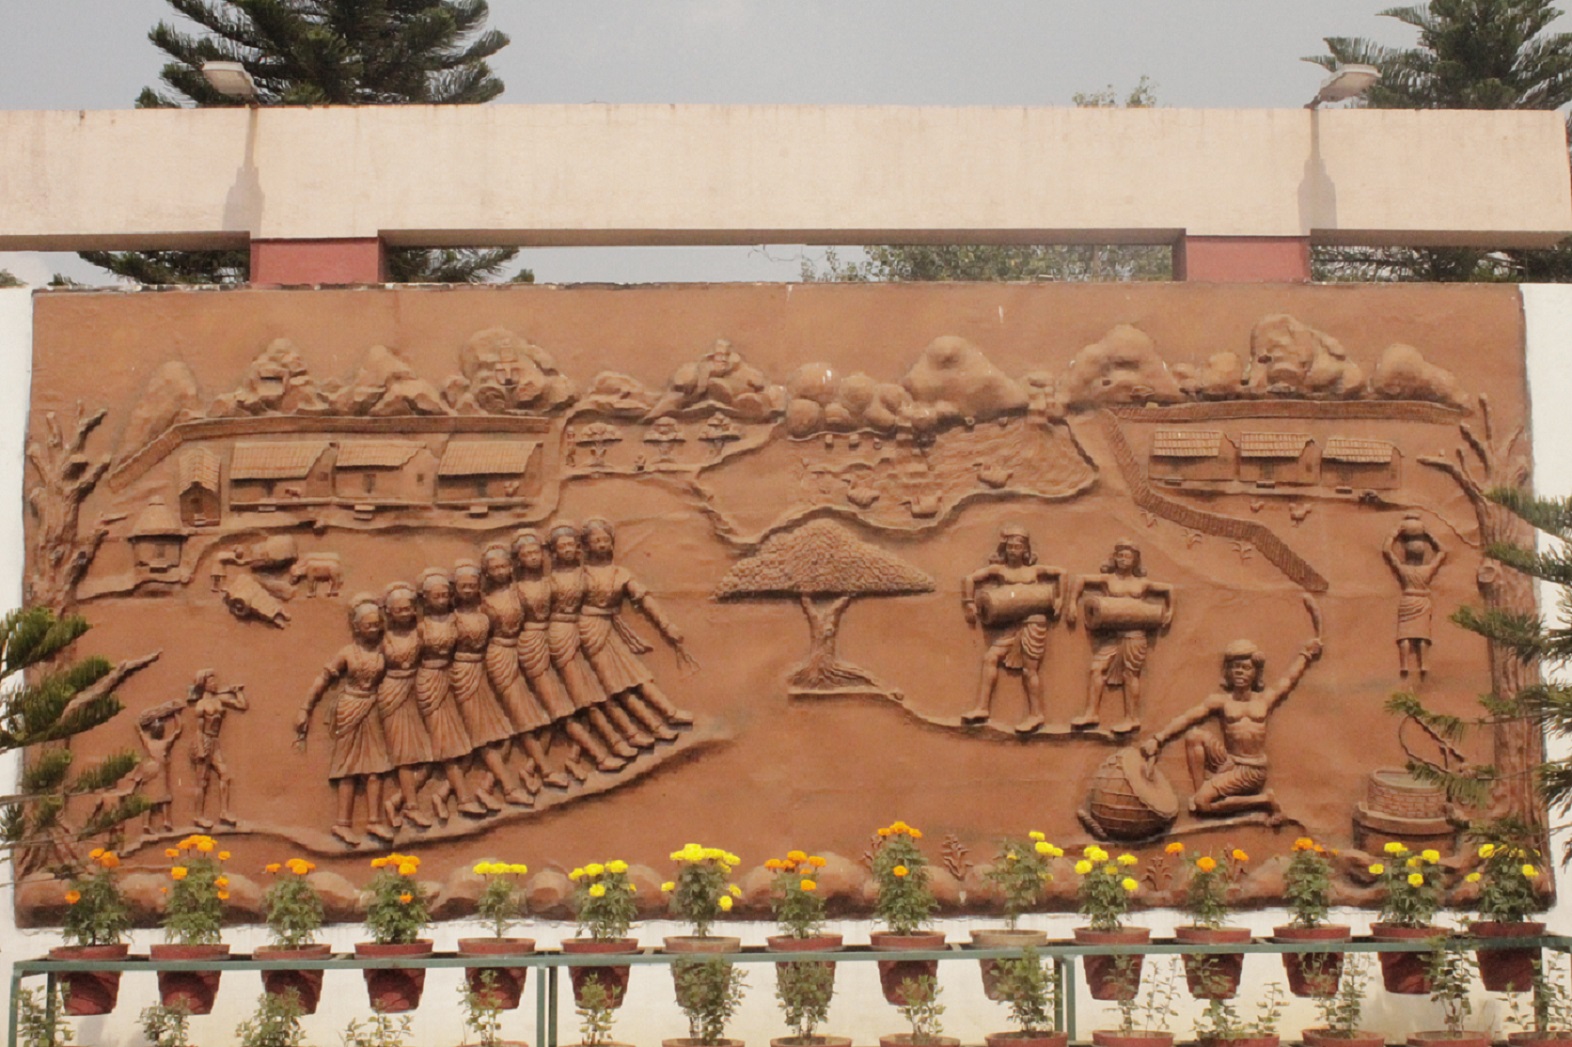 Mural displaying Nagpuri folk dance and music.